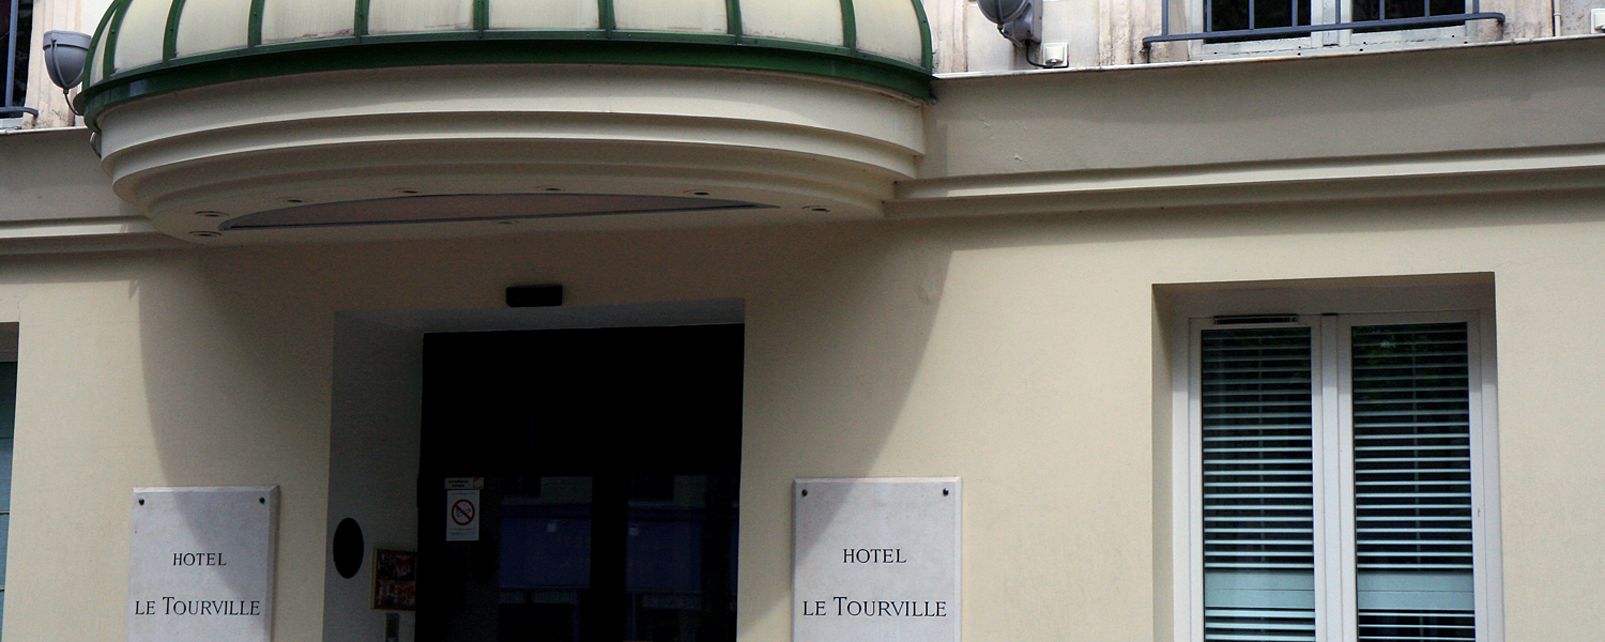 Hotel Le Tourville